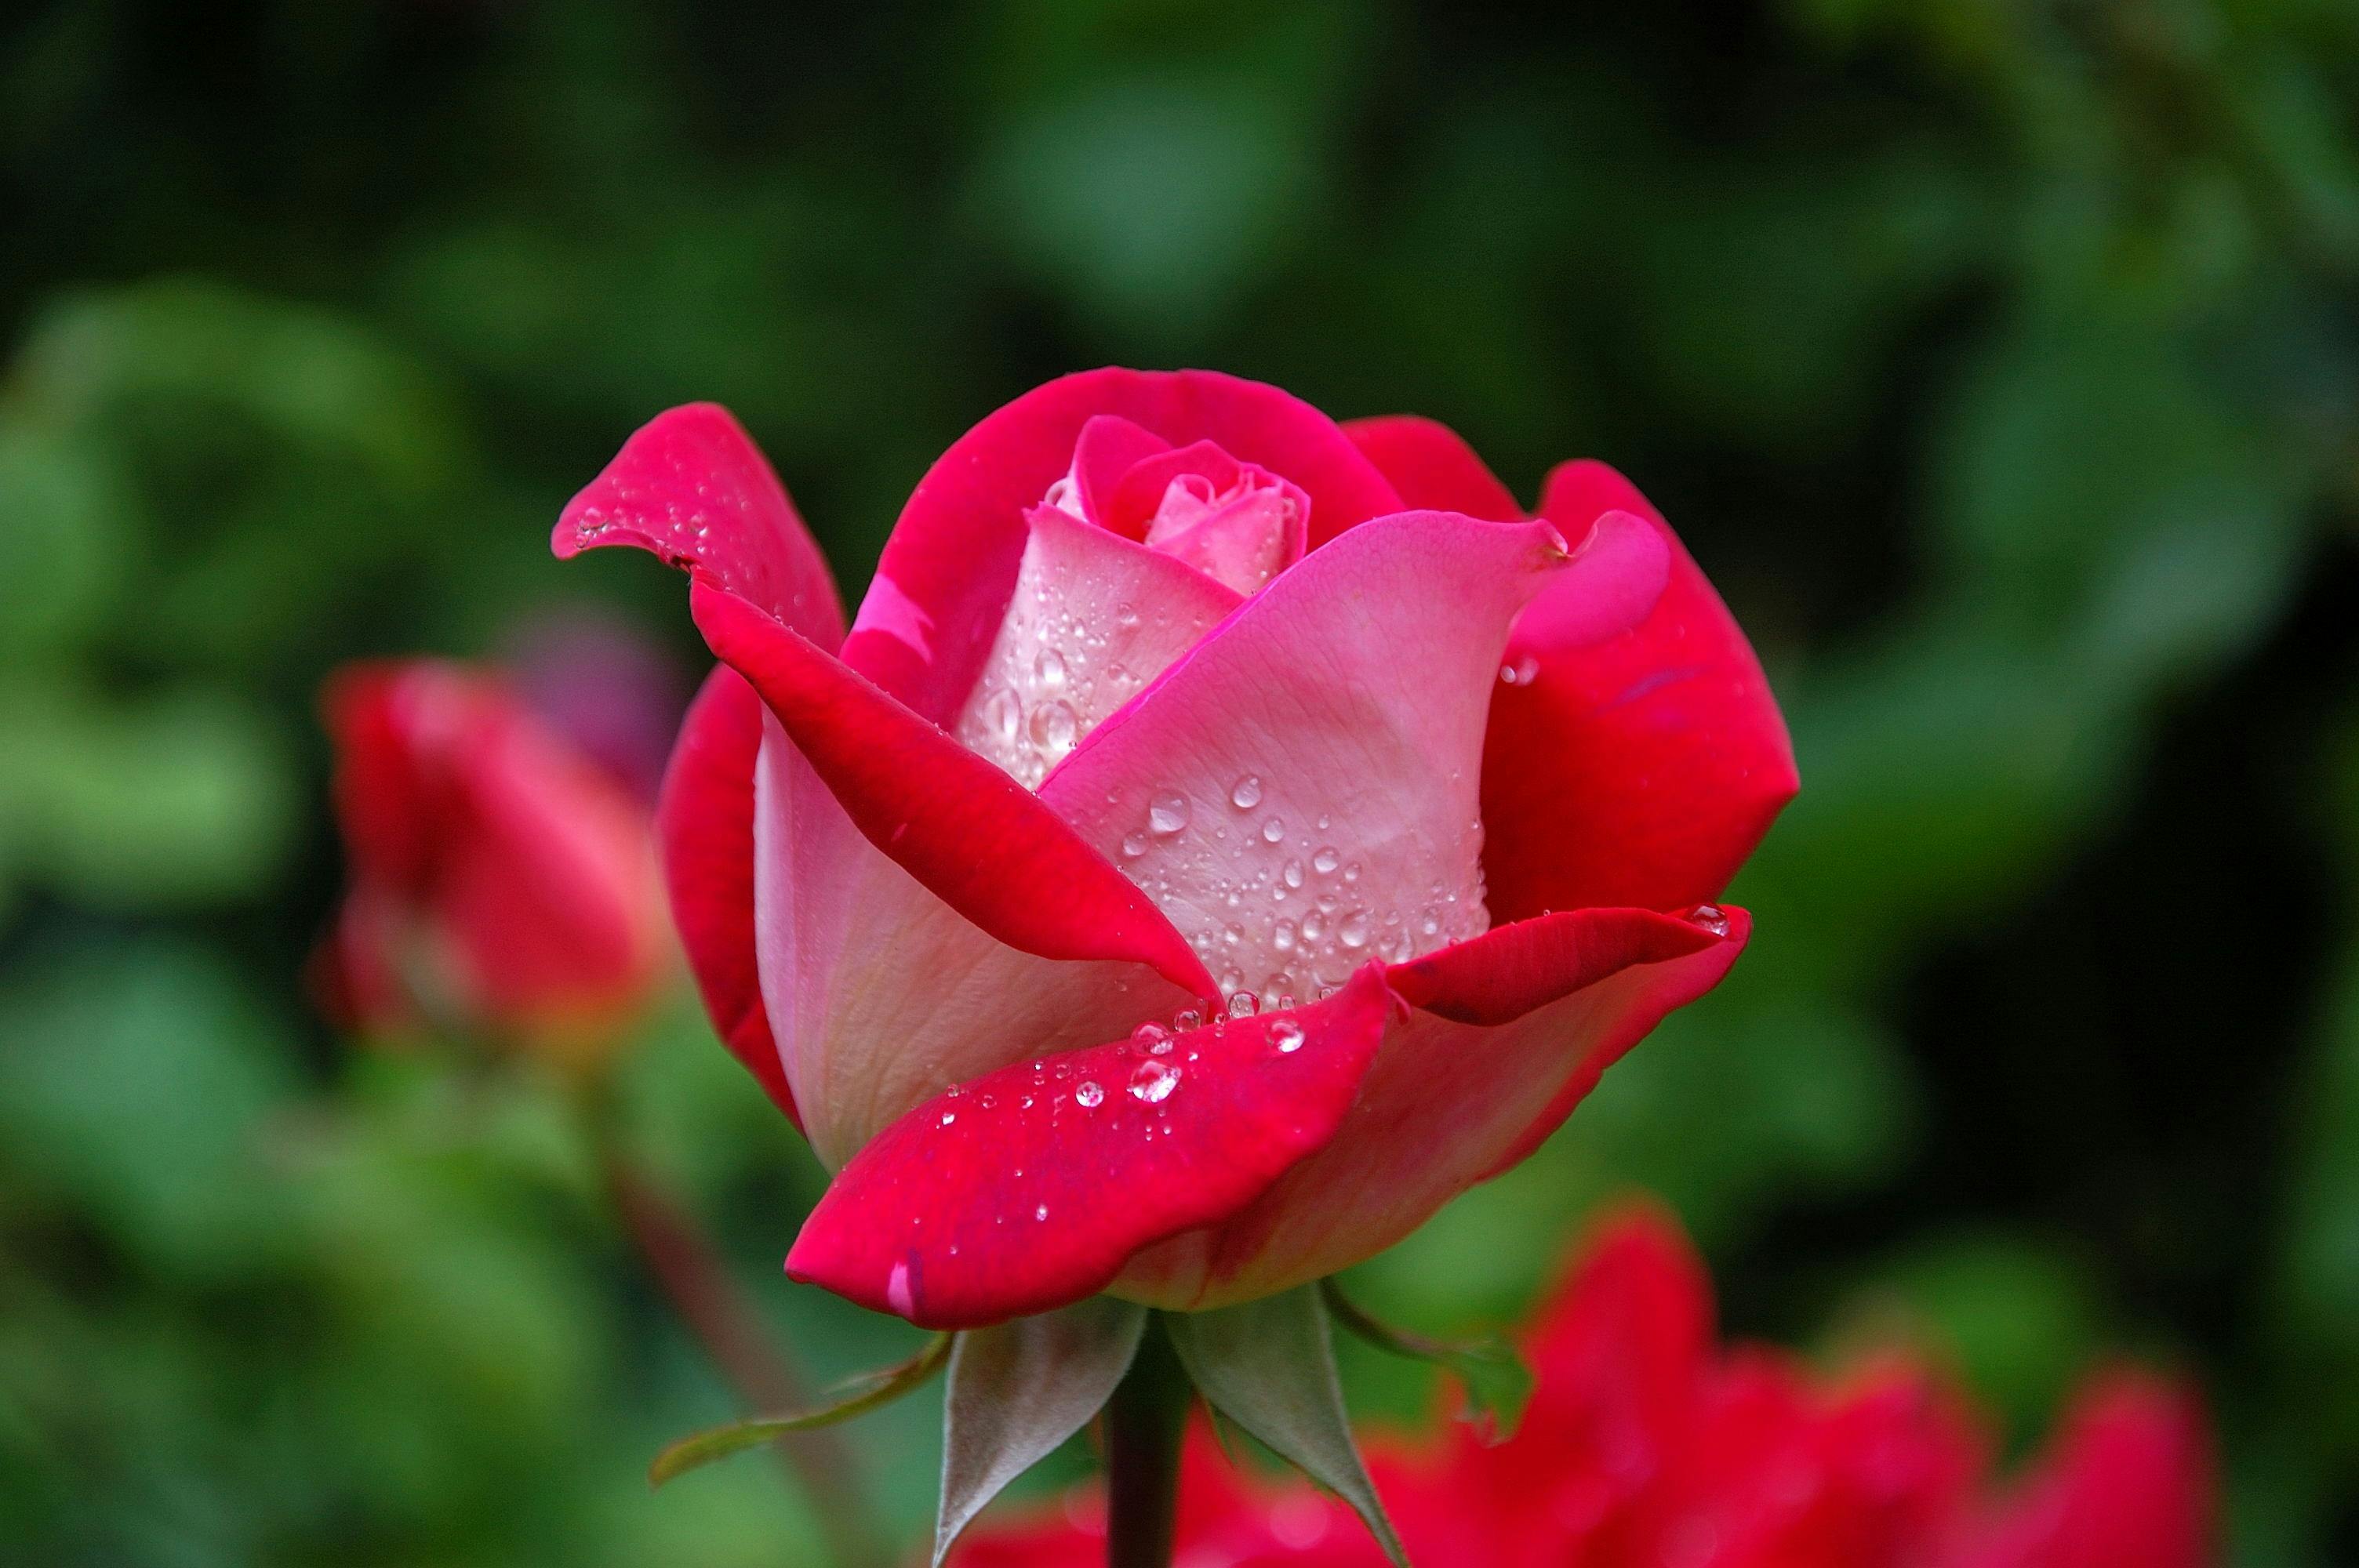 1000 Beautiful Rose Flower Photos Pexels Free Stock Photos